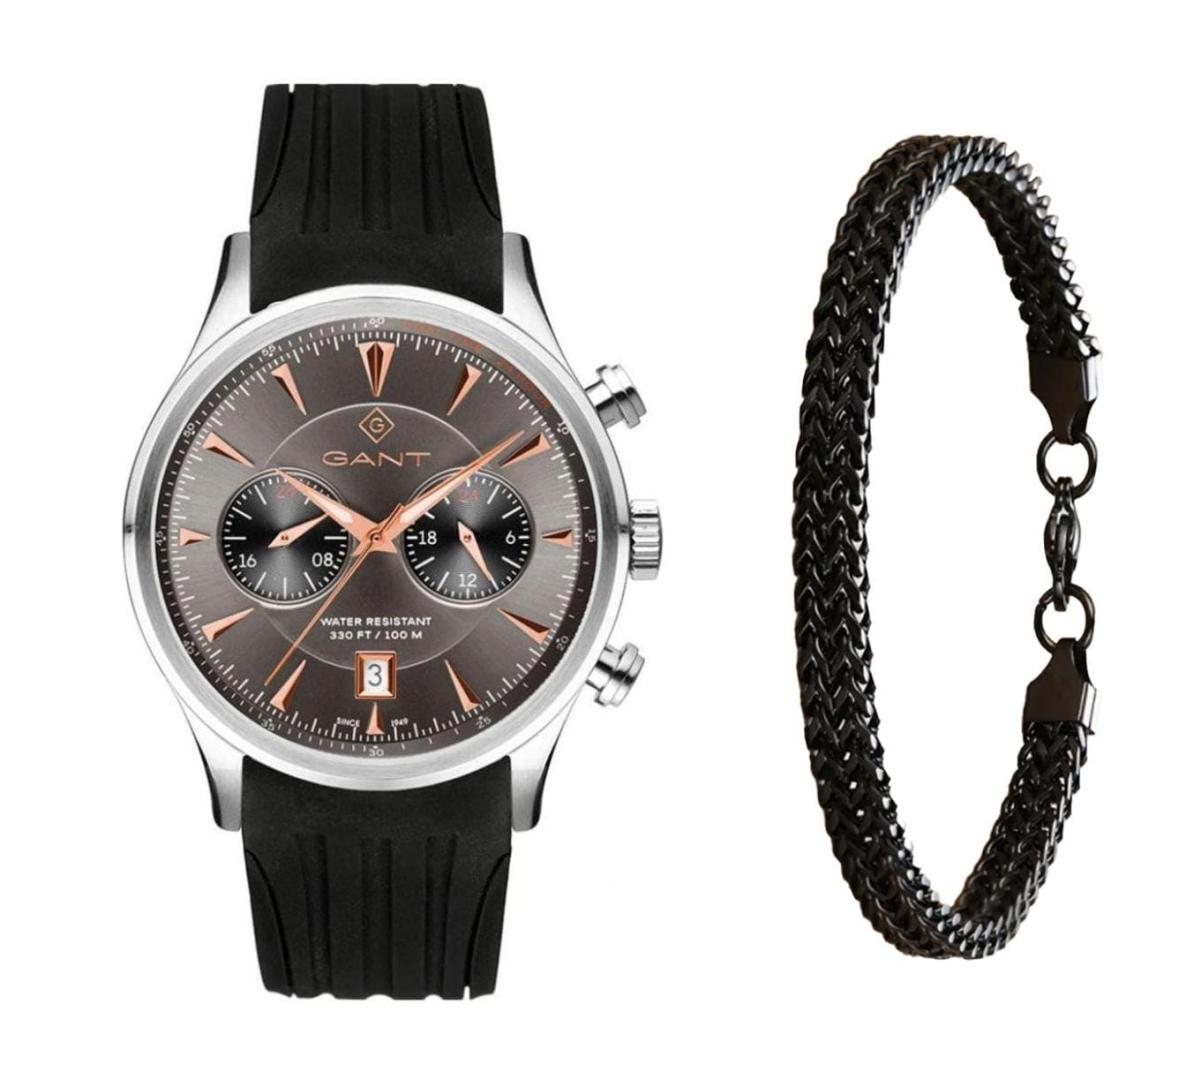 שעון יד אנלוגי לגבר gant g135014 גאנט עם צמיד חוליות שחור